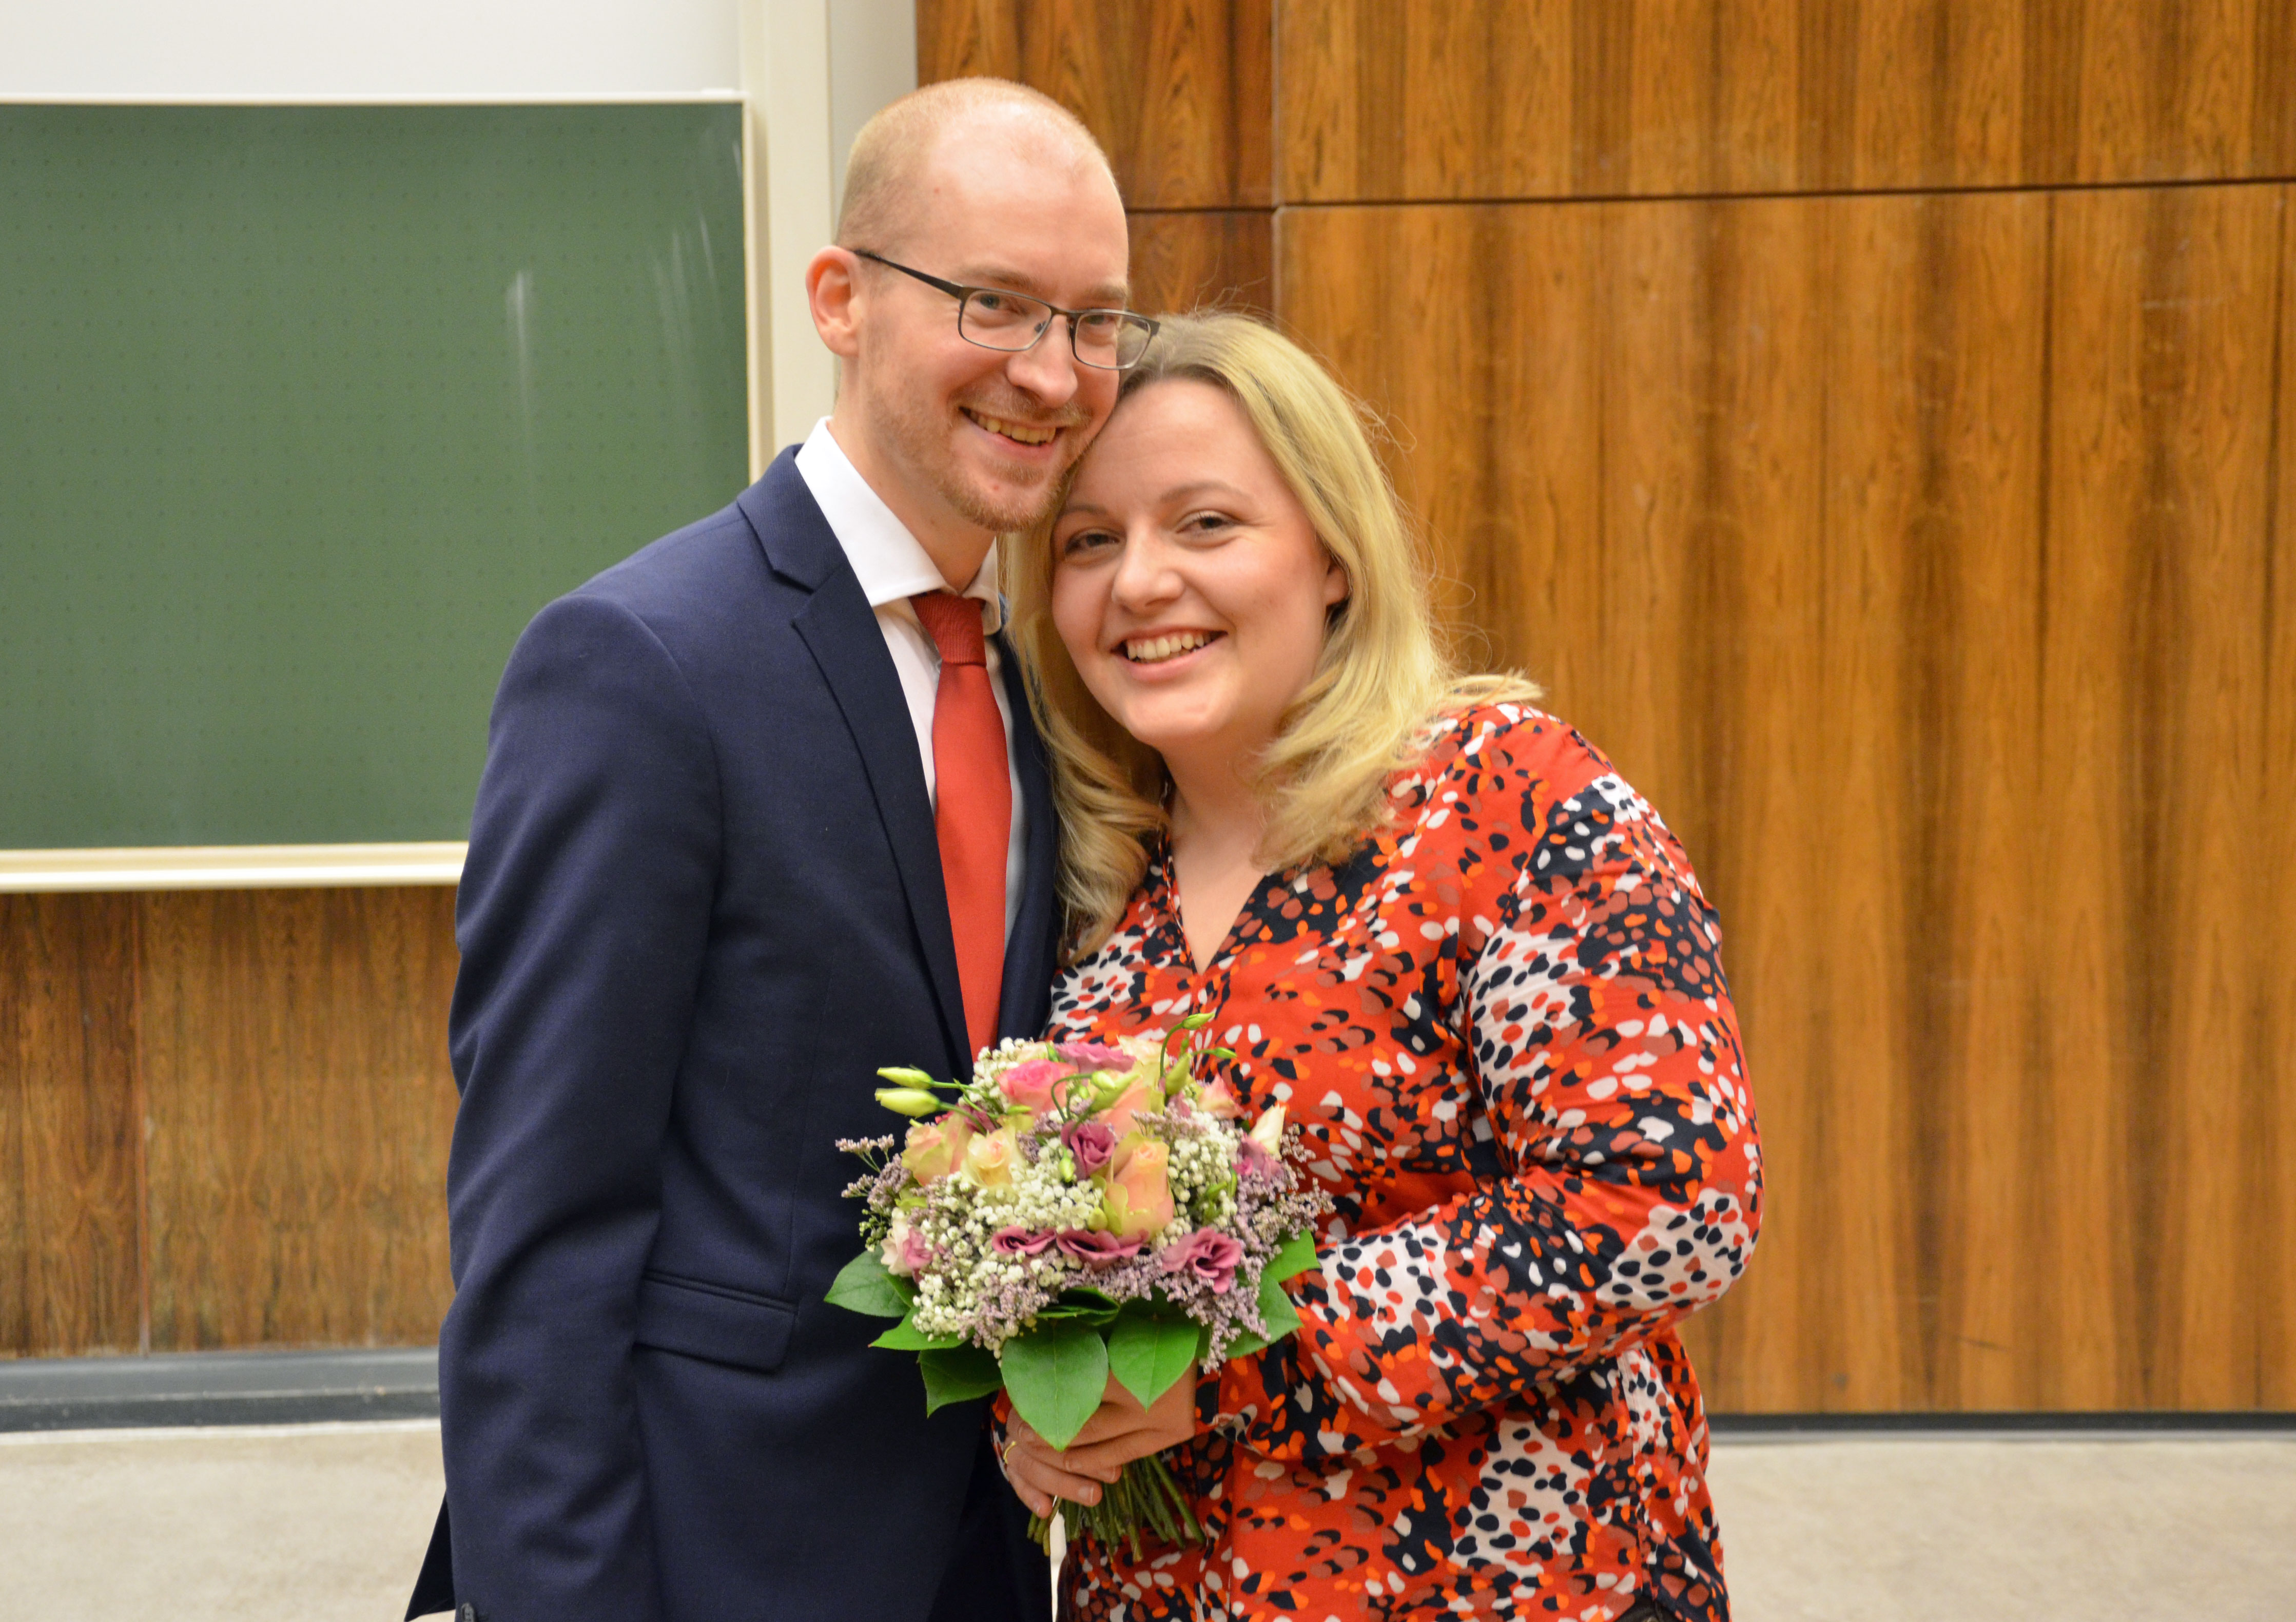 Fotos: Happy End im Hörsaal. Larissa Sommer und Philipp Schlößer haben sich kurz vor Weihnachten an ihrer ehemaligen Hochschule verlobt. Fotos: Alexander Althöfer